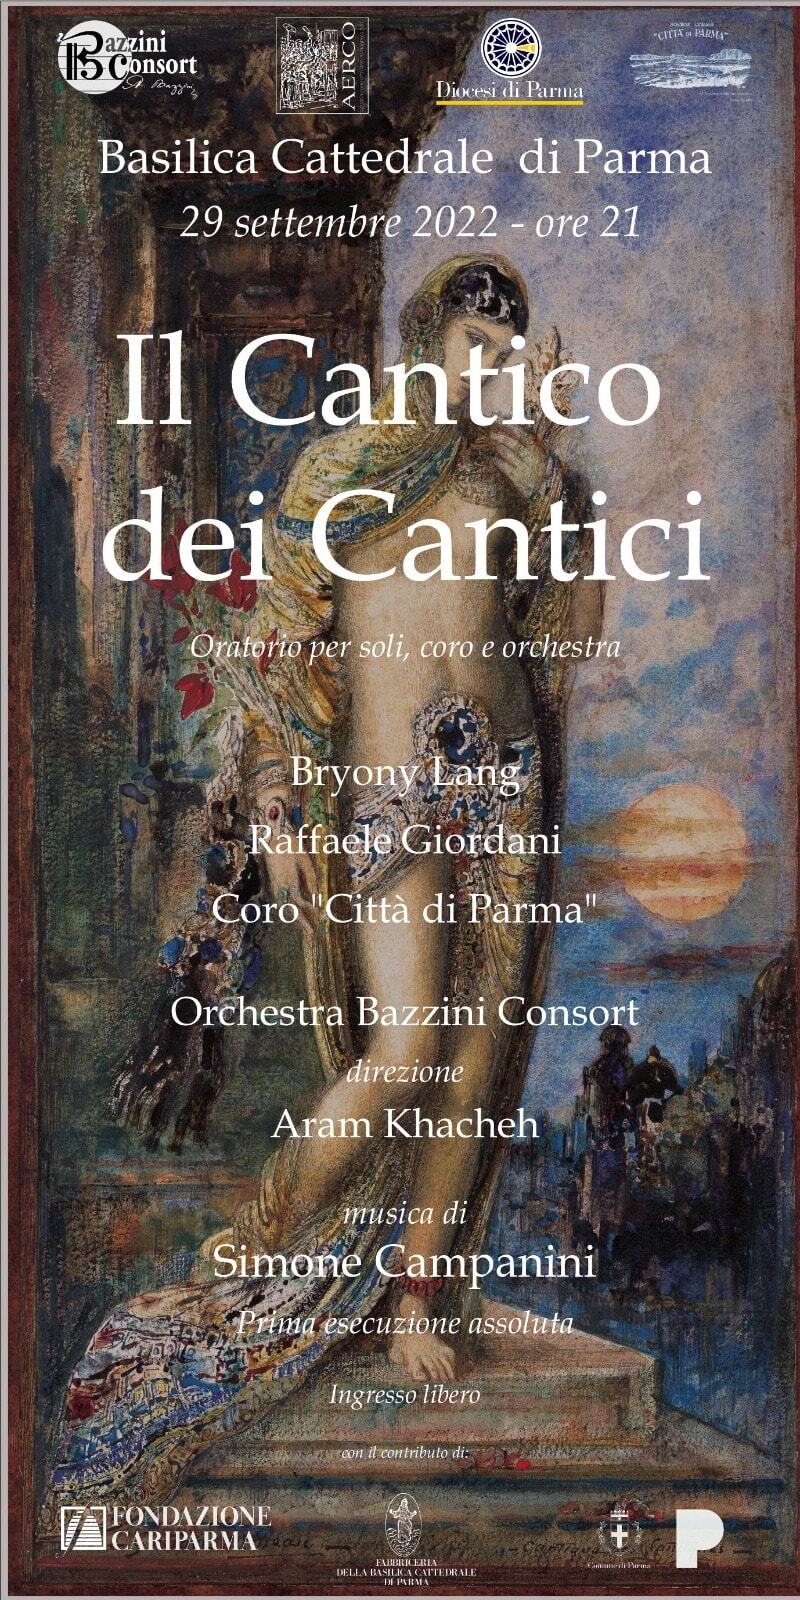 Il cantico dei cantici, concerto in Cattedrale